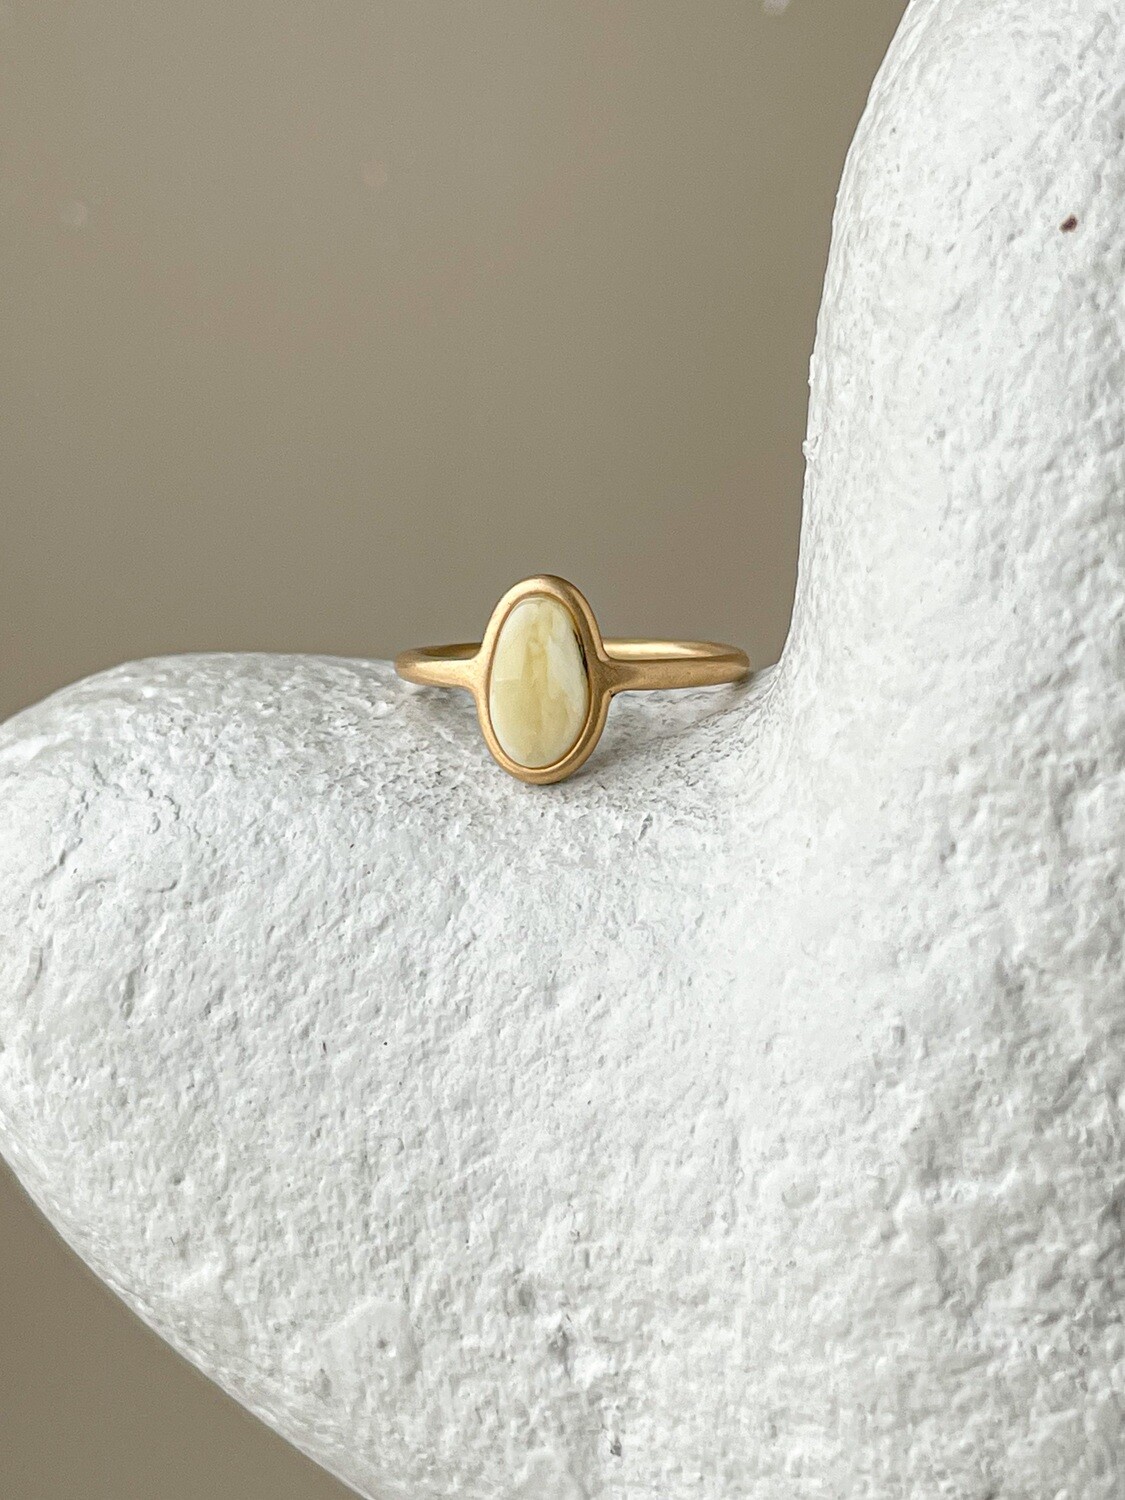 Тонкое кольцо с медовым янтарем, размер 17